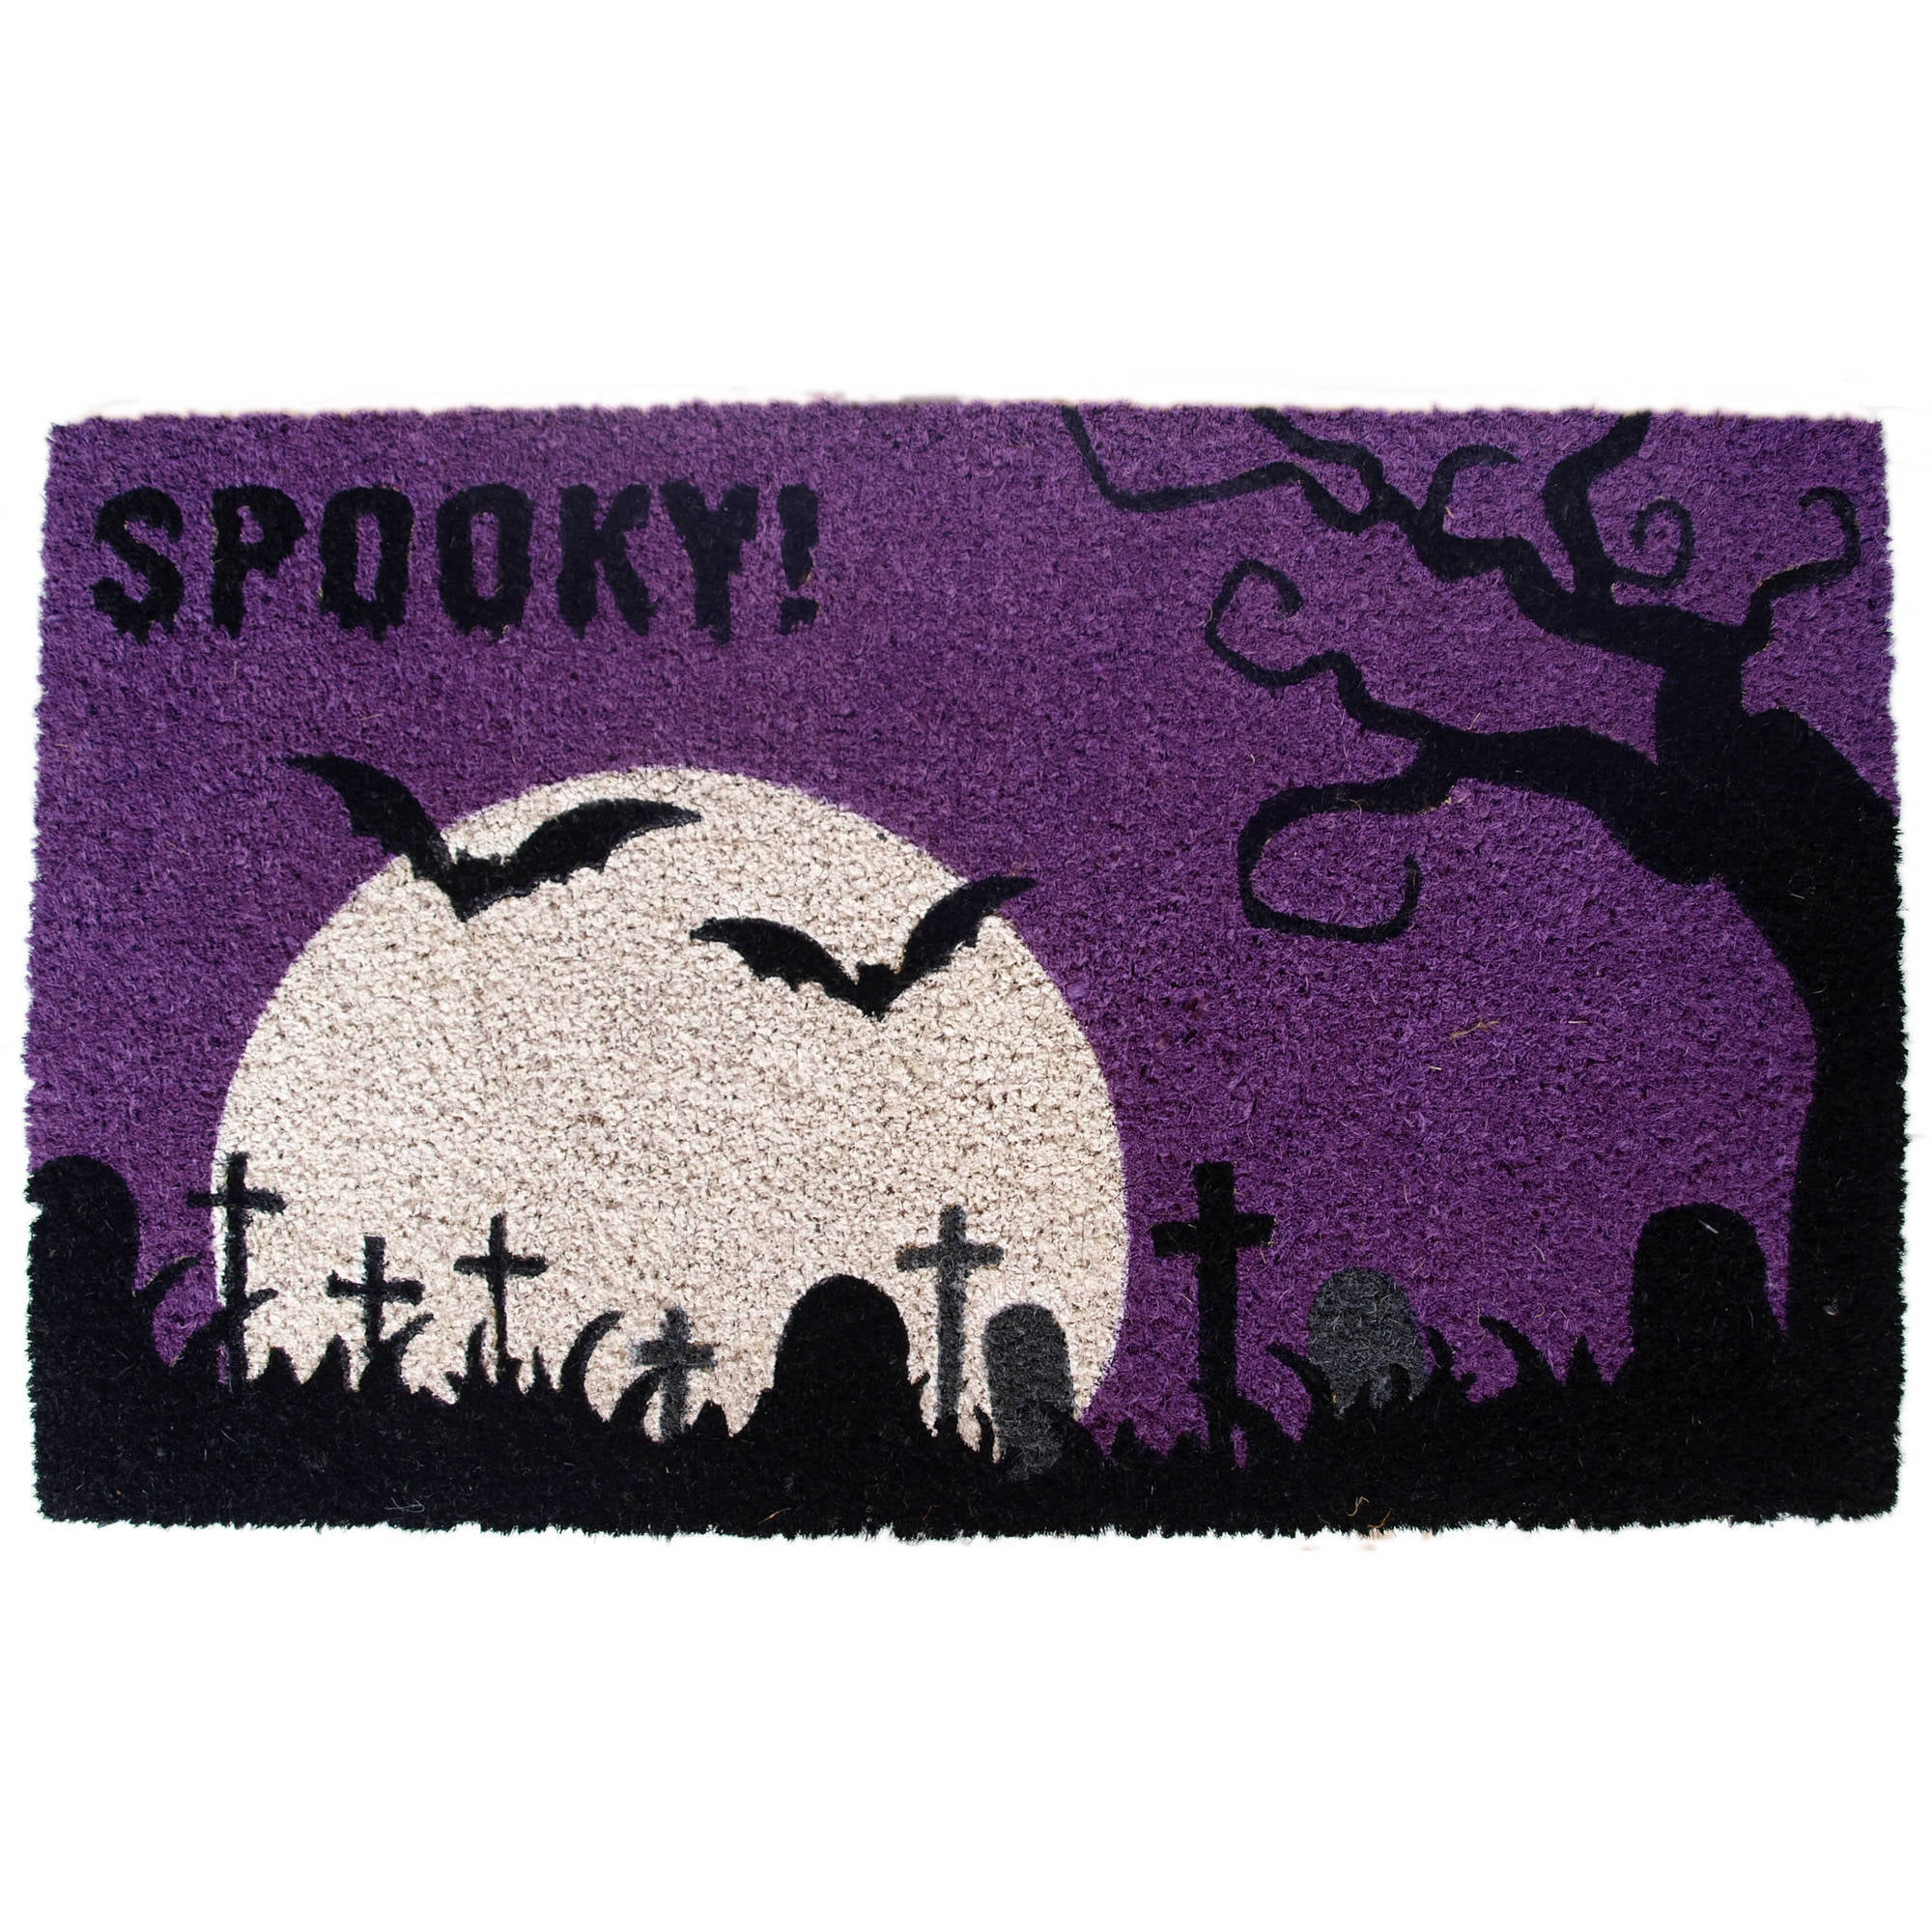 Spooky Halloween Doormat - Walmart.com